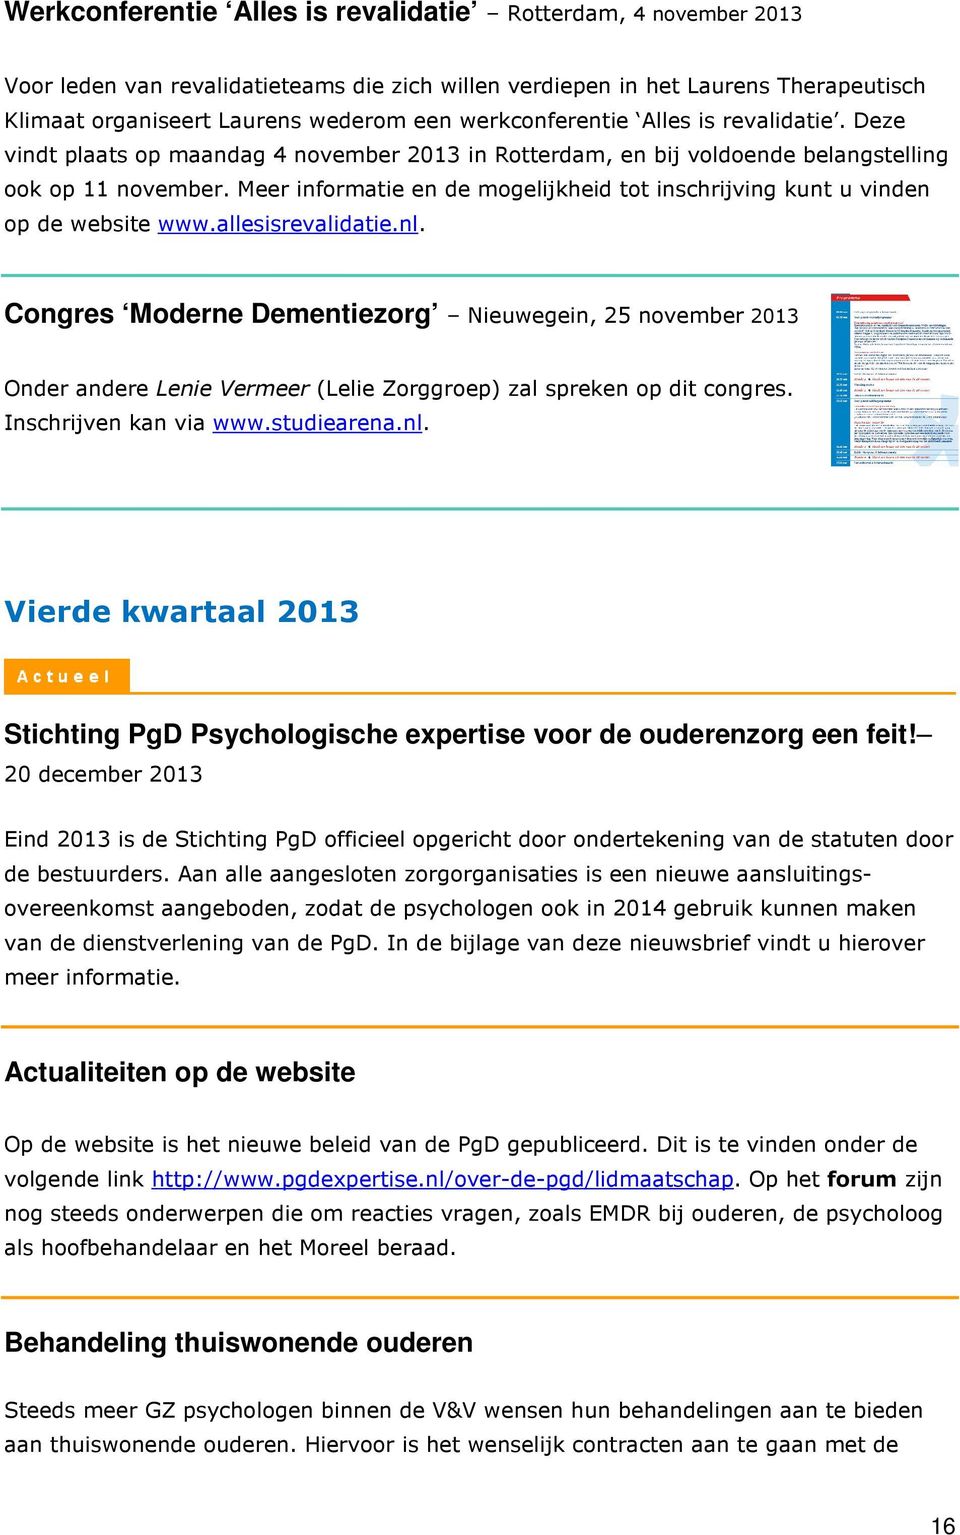 Meer informatie en de mogelijkheid tot inschrijving kunt u vinden op de website www.allesisrevalidatie.nl.